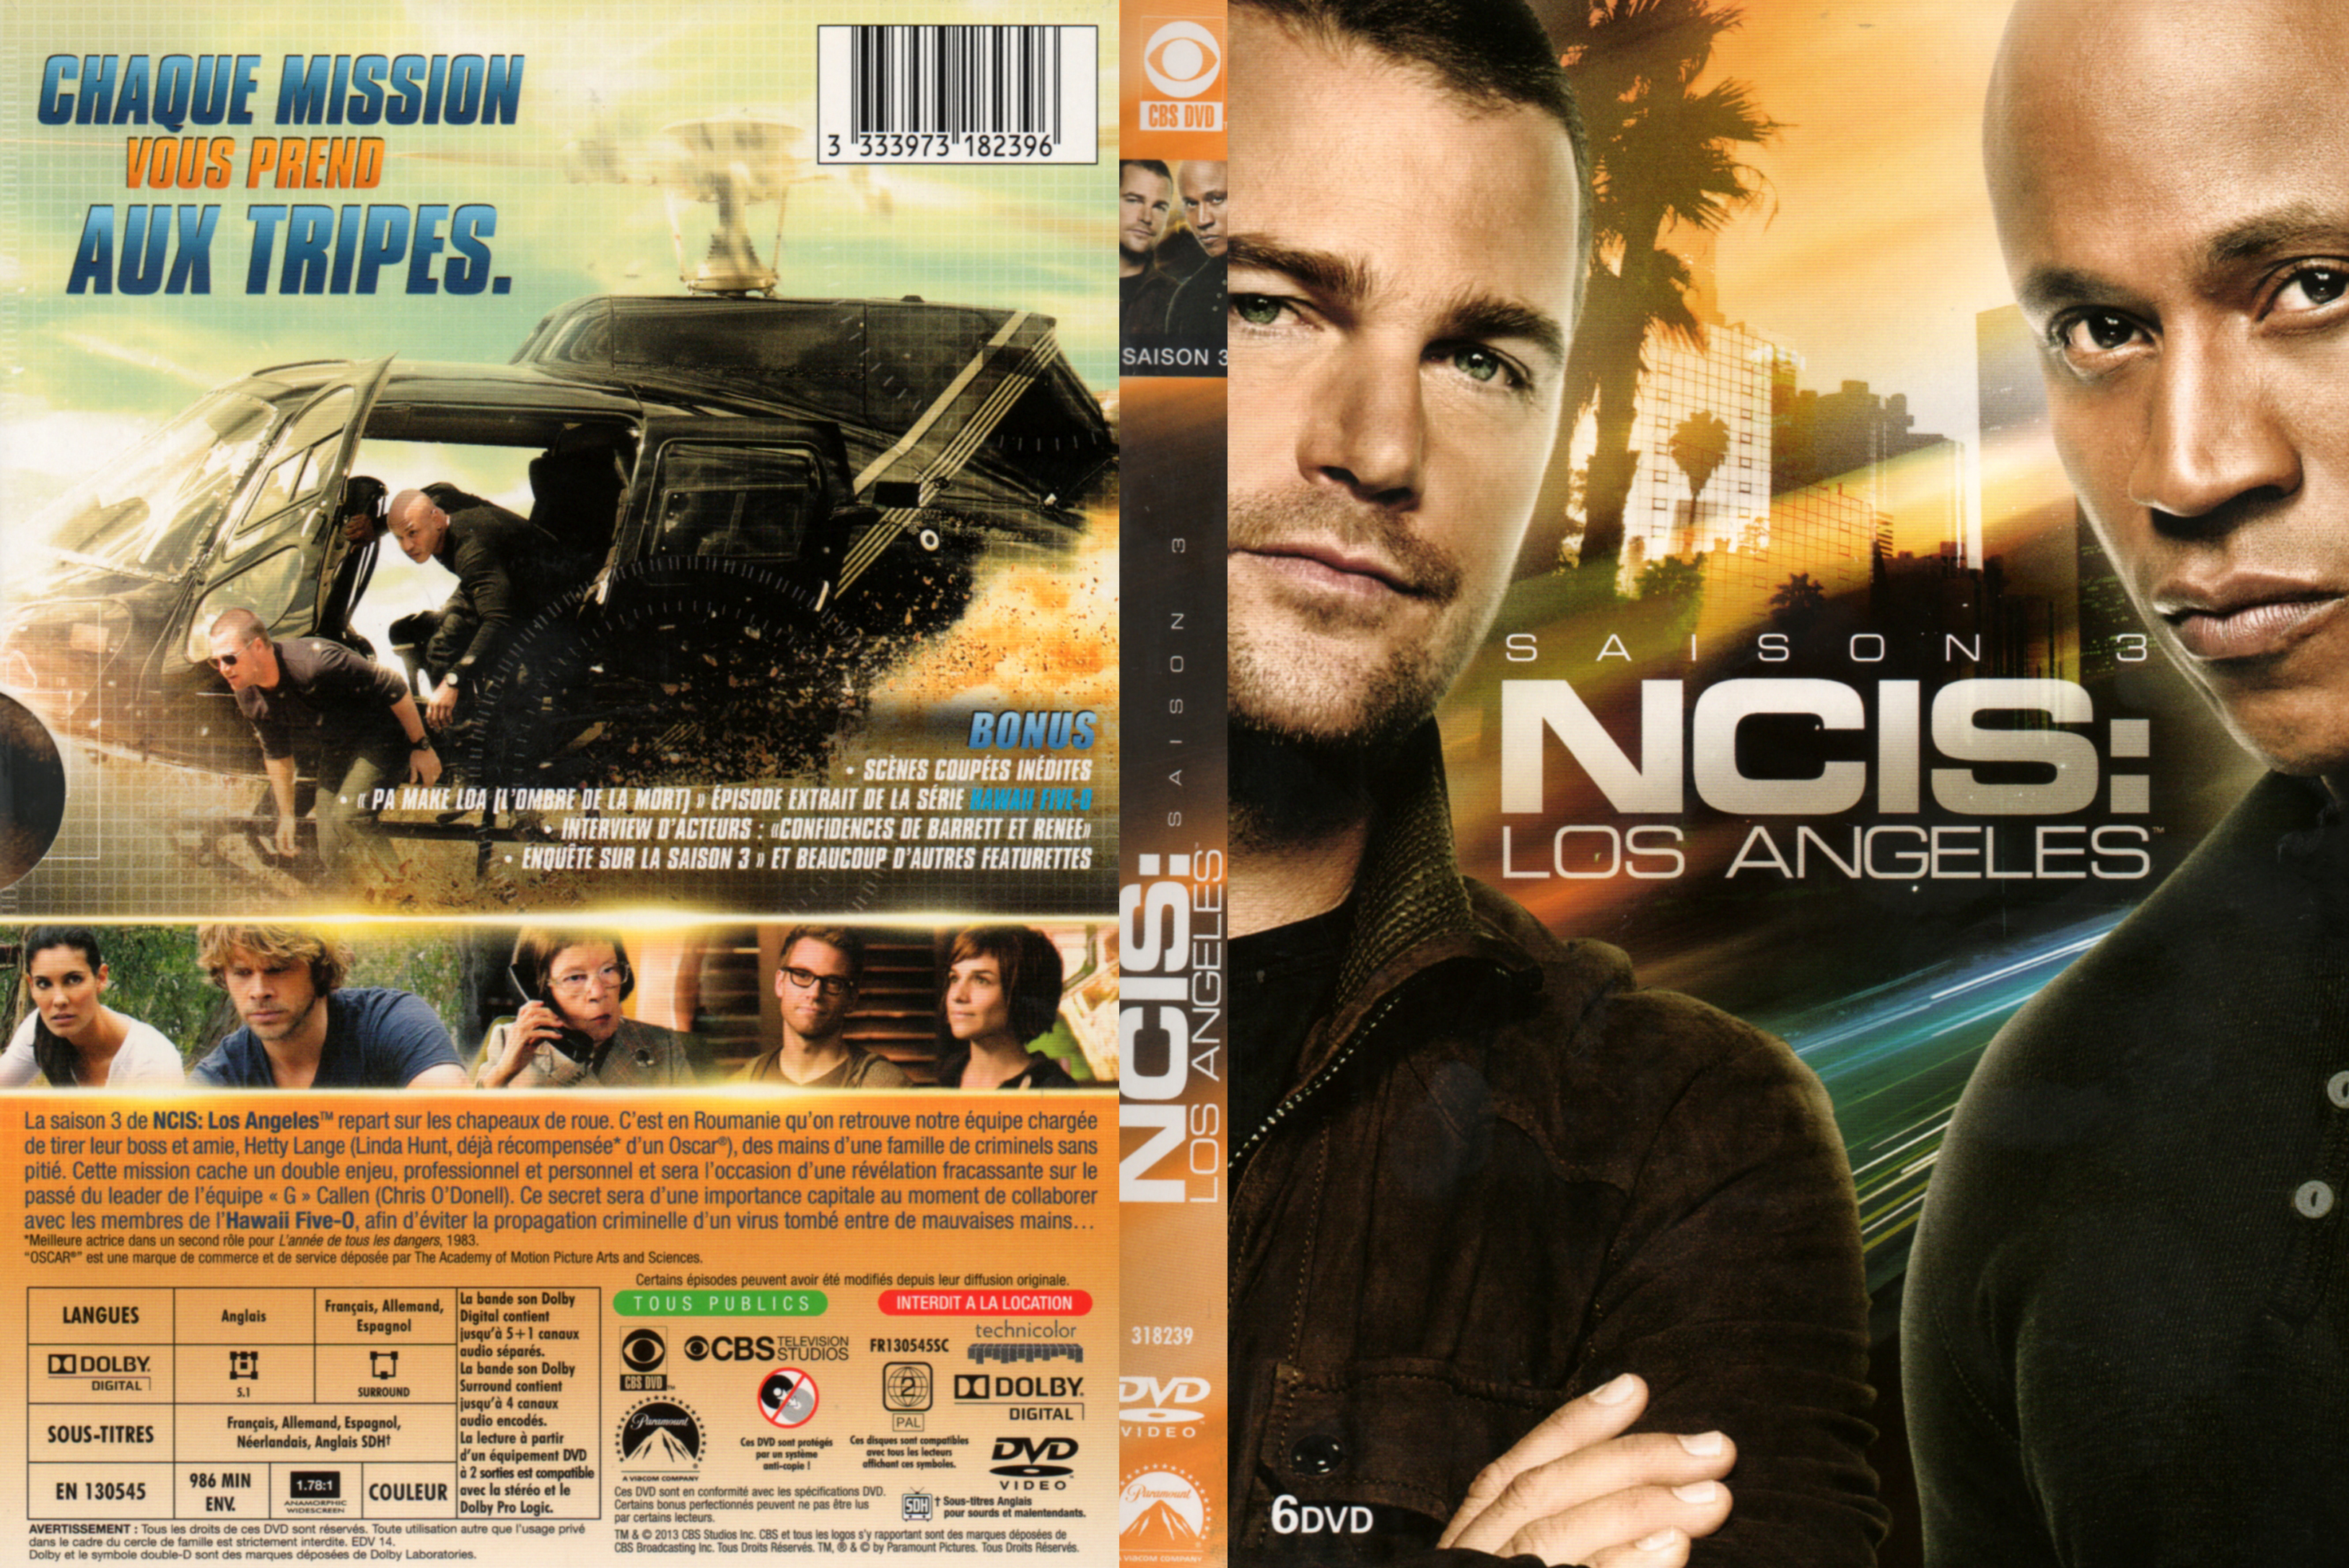 Jaquette DVD NCIS Los Angeles Saison 3 COFFRET